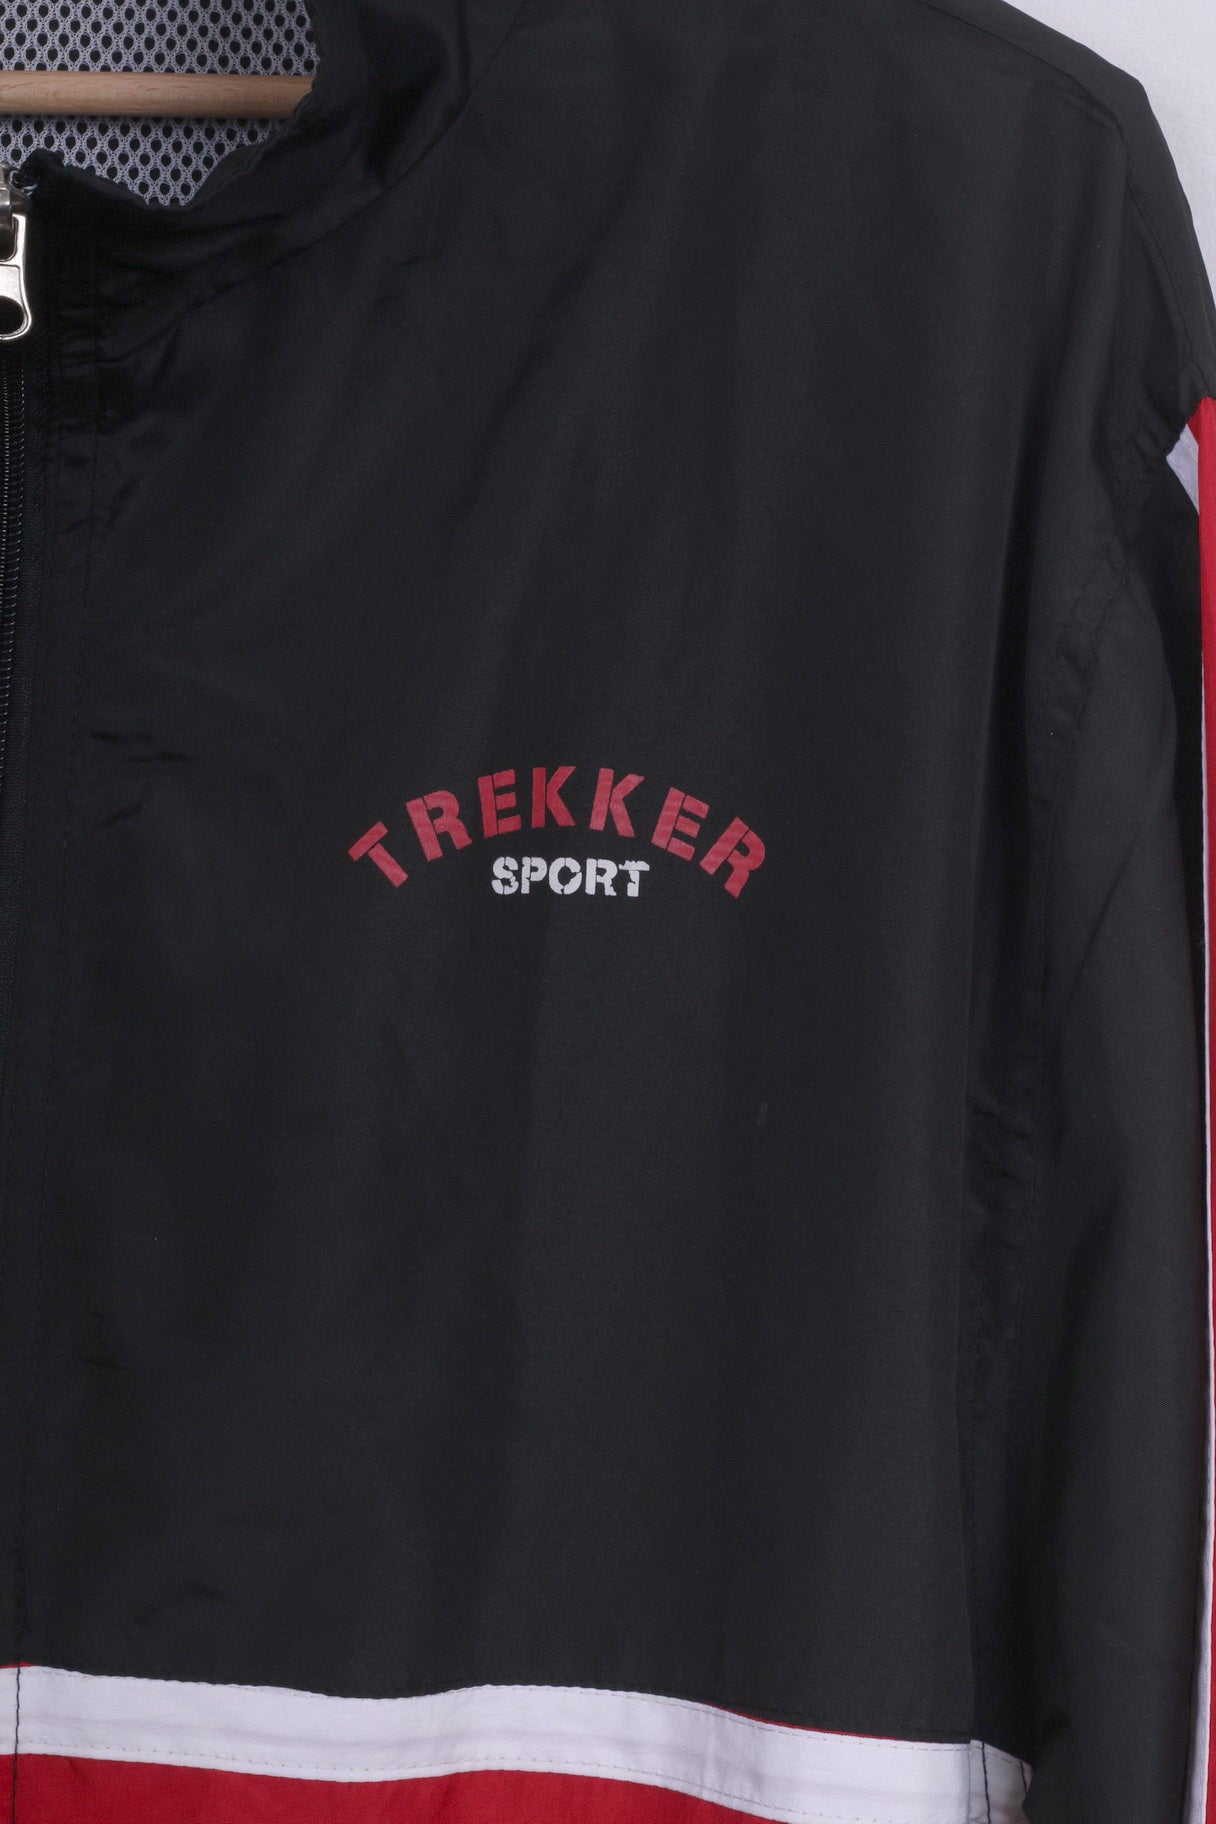 Trekker Sport Mens XL Lightweight Jacket Black Sportswear Full Zipper Vintage